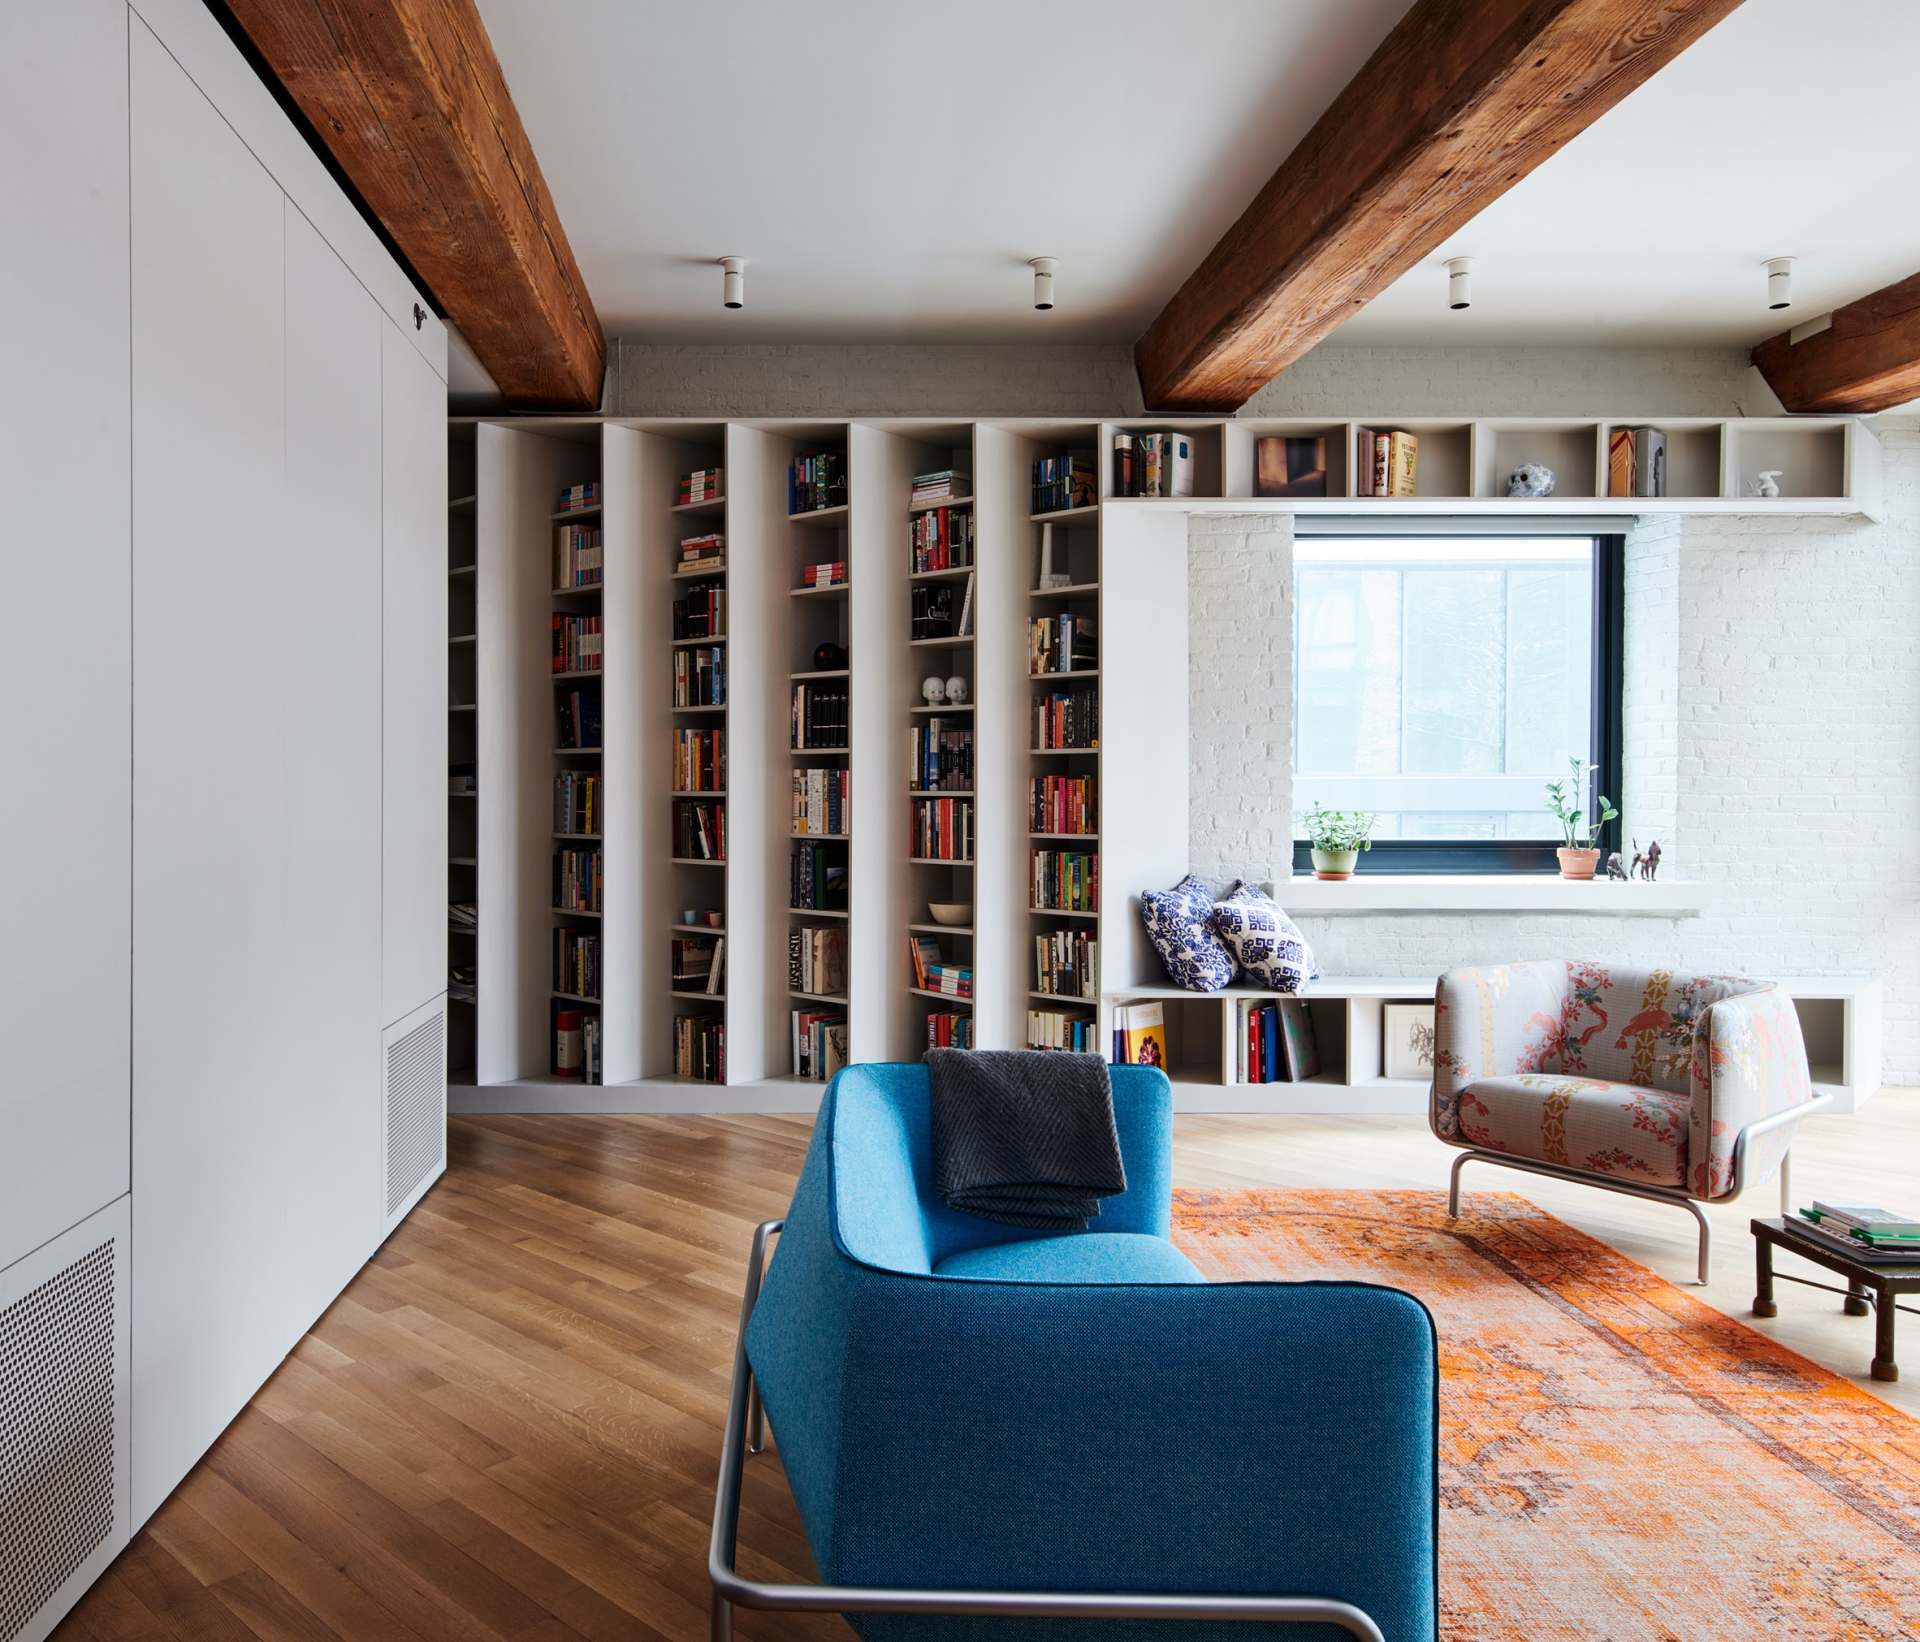 Cặp vợ chồng sở hữu căn hộ áp mái ở Brooklyn (Mỹ) có hàng nghìn cuốn sách cần trưng bày. Để lưu trữ chúng, đội ngũ của Buro Koray Duman đã thiết kế một thư viện ở một góc bức tường của căn hộ với giá đỡ tùy chỉnh ở góc 45 độ độc đáo.